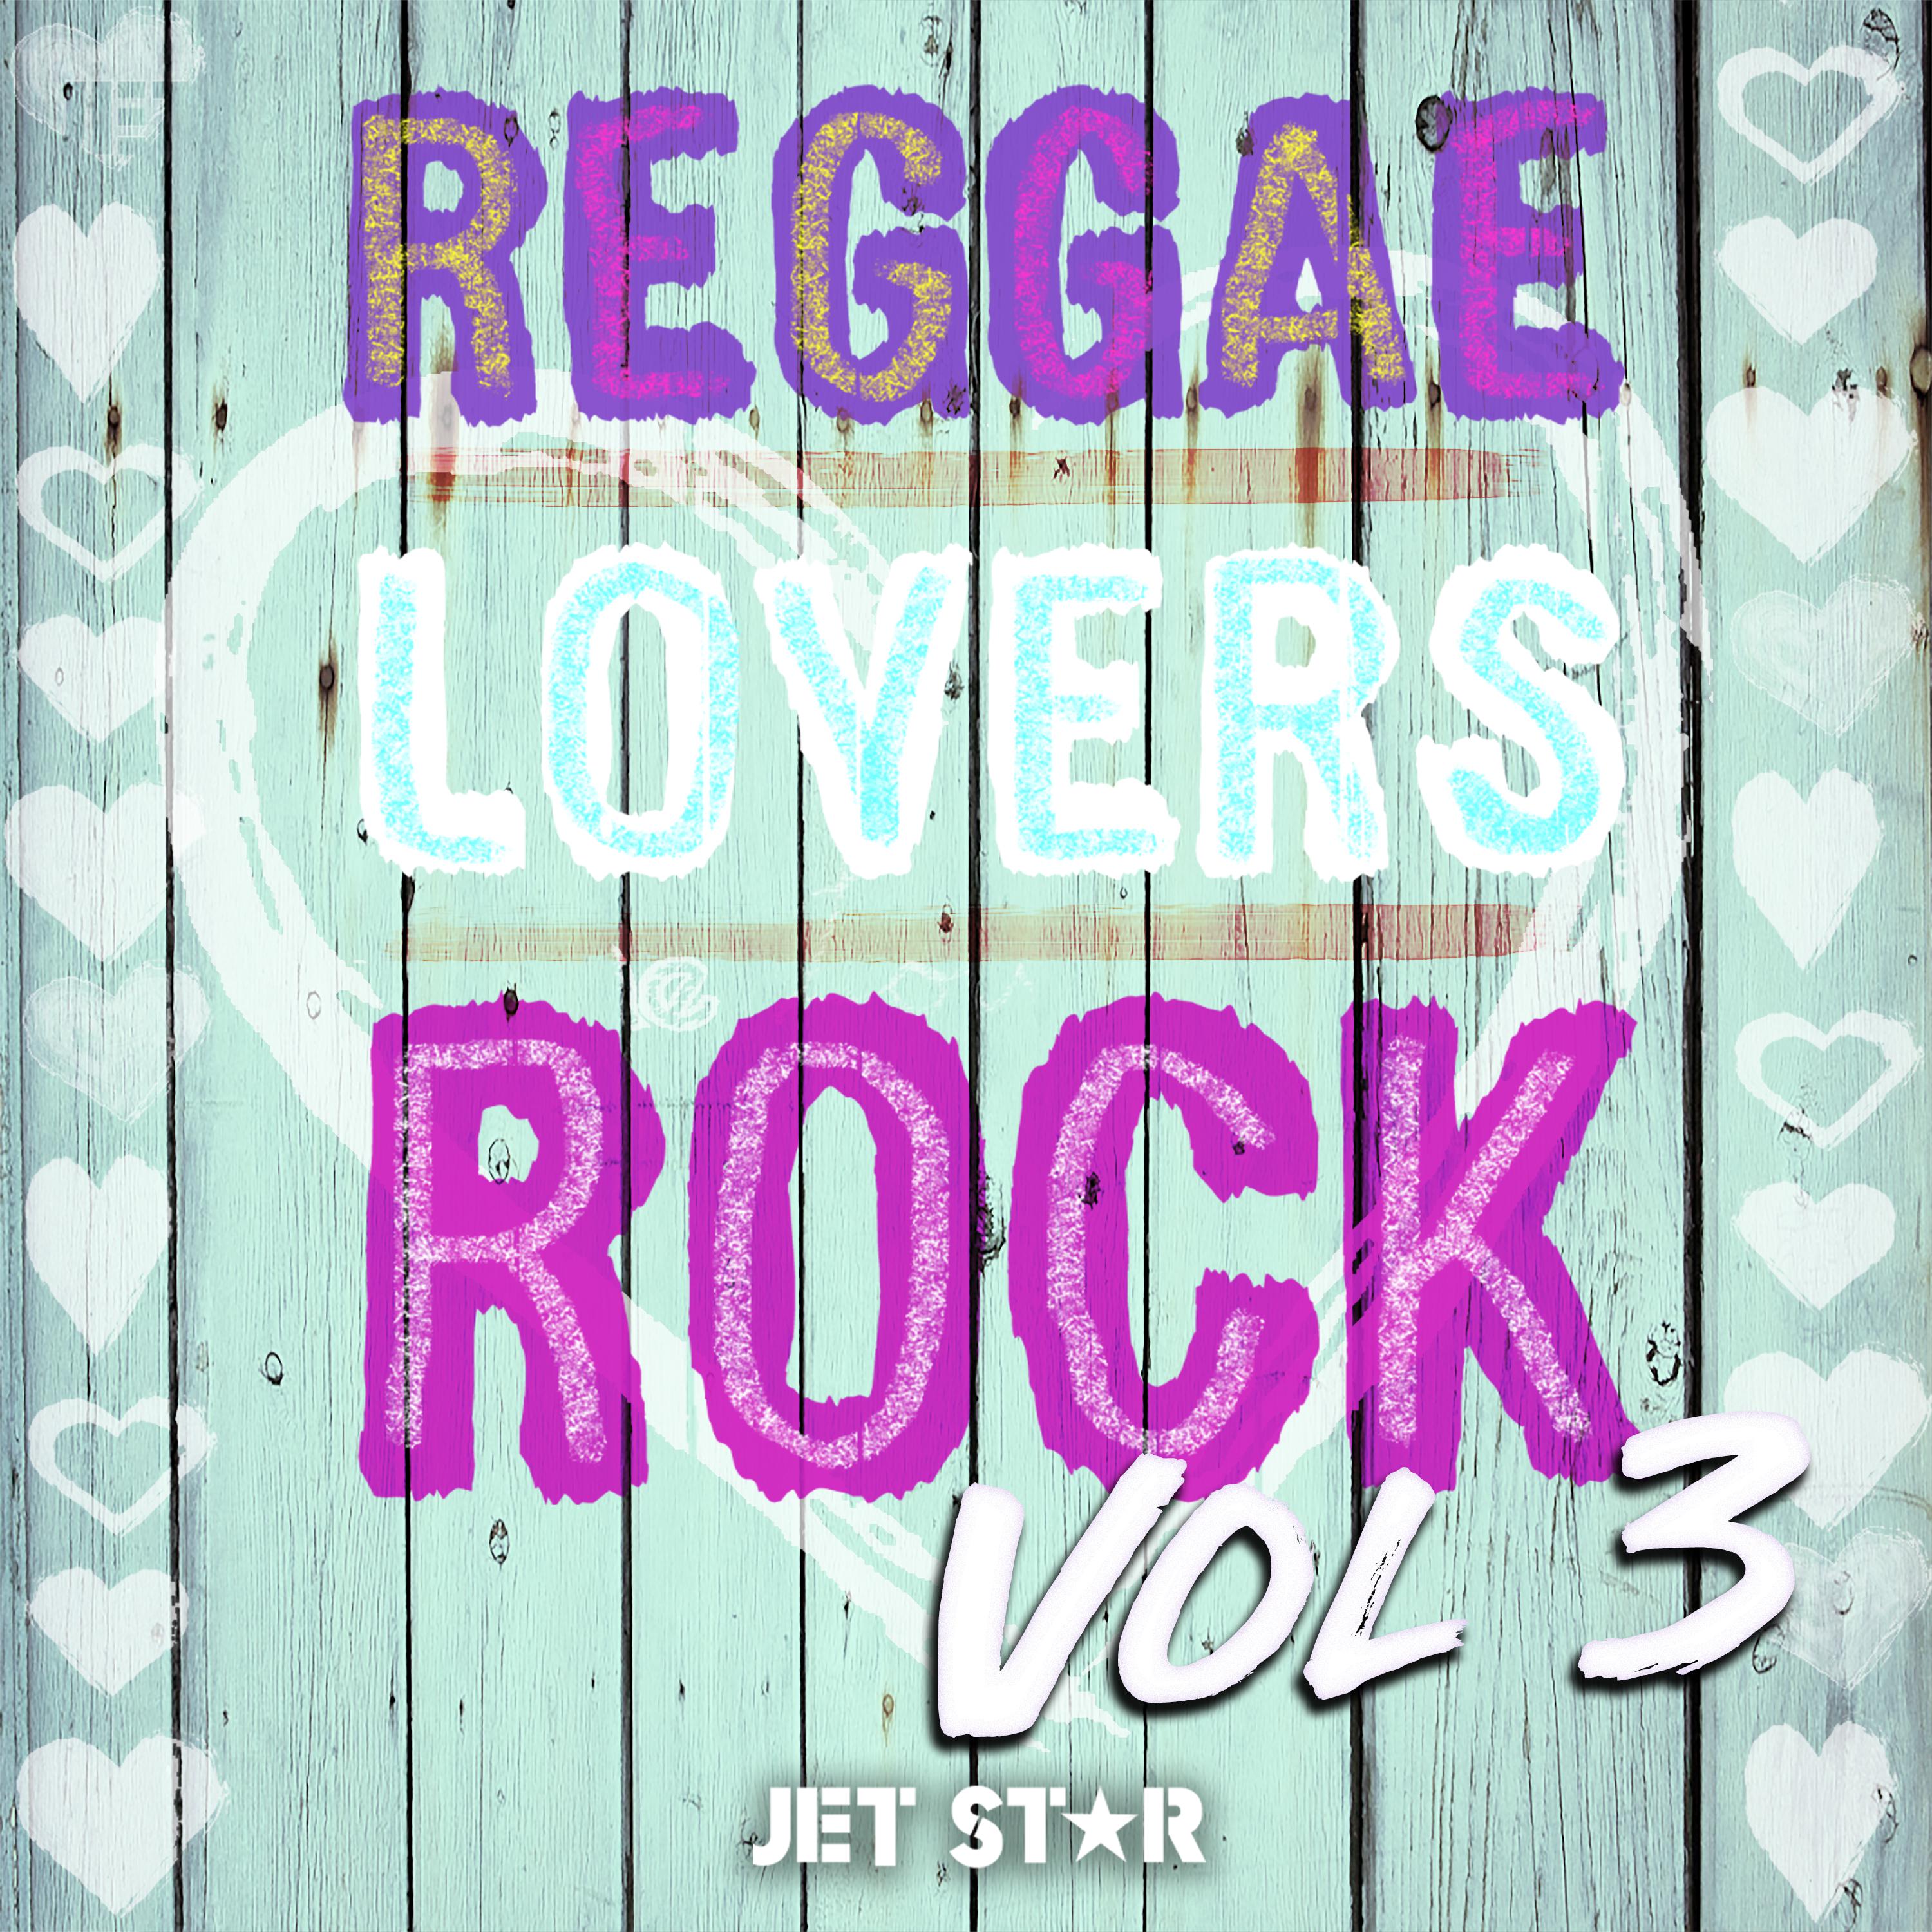 Reggae Lovers Rock, Vol. 3